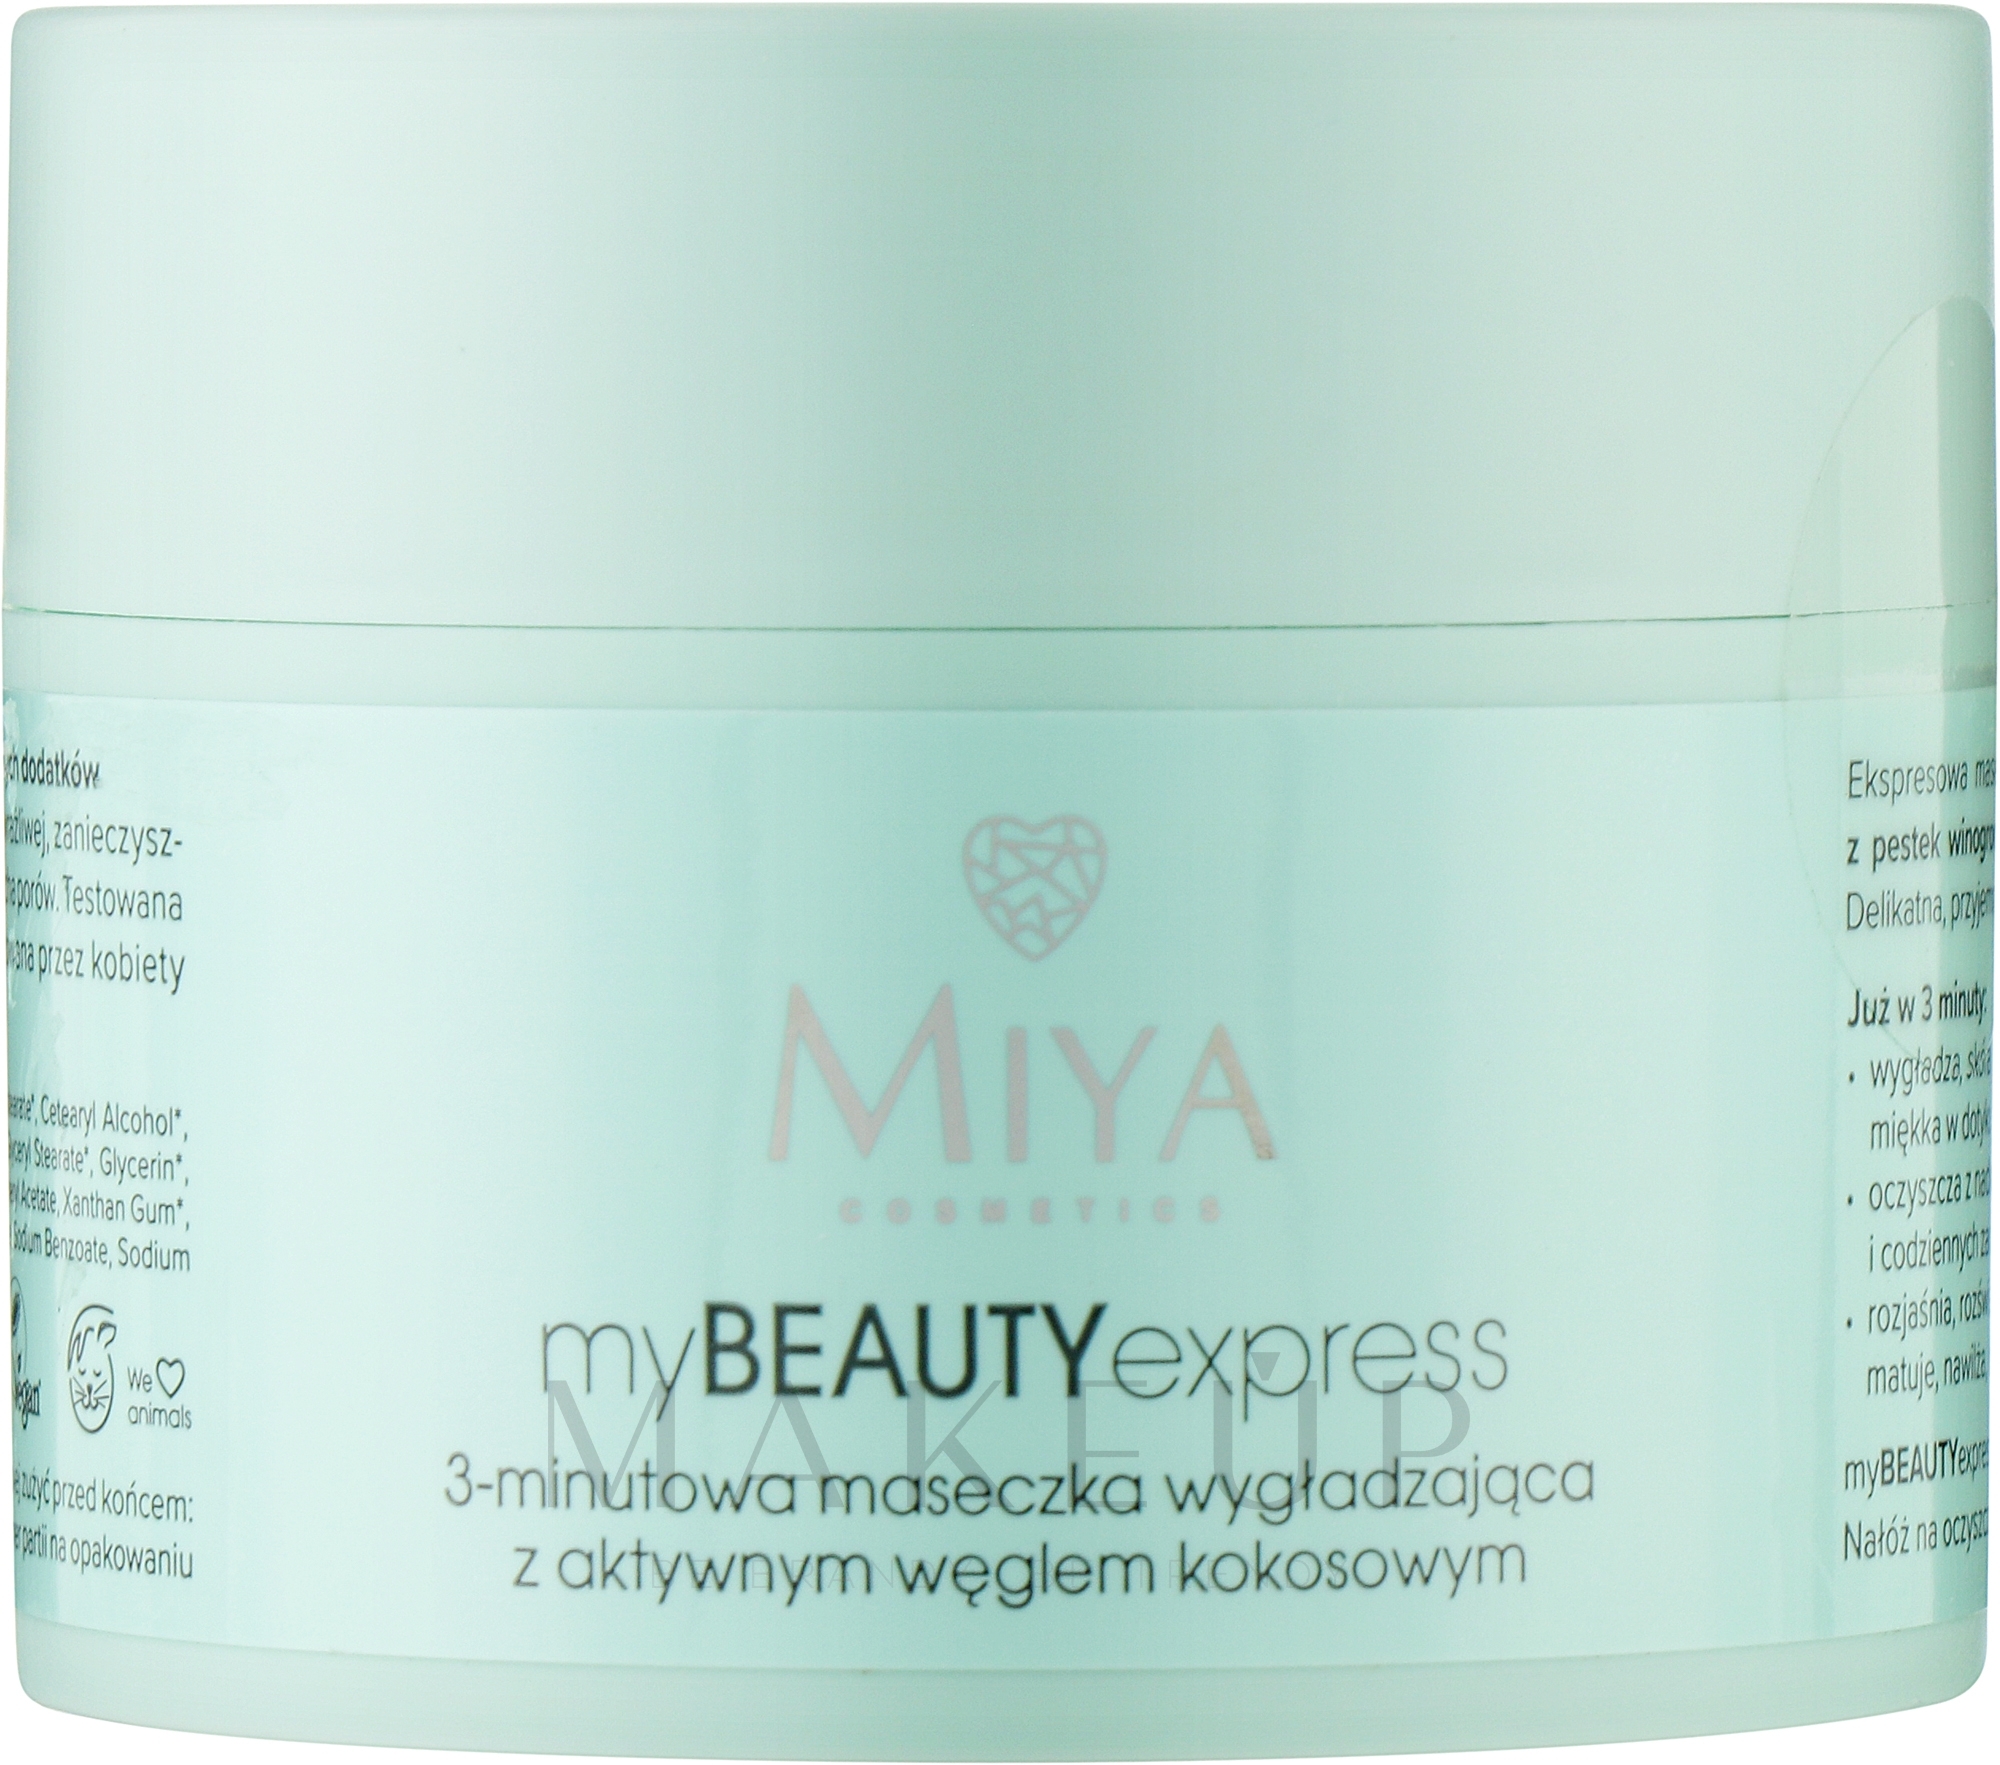 Glättende Gesichtsmaske mit Aktivkohle aus Kokosnuss-Schalen - Miya Cosmetics My Beauty Express 3 Minute Mask — Foto 50 g